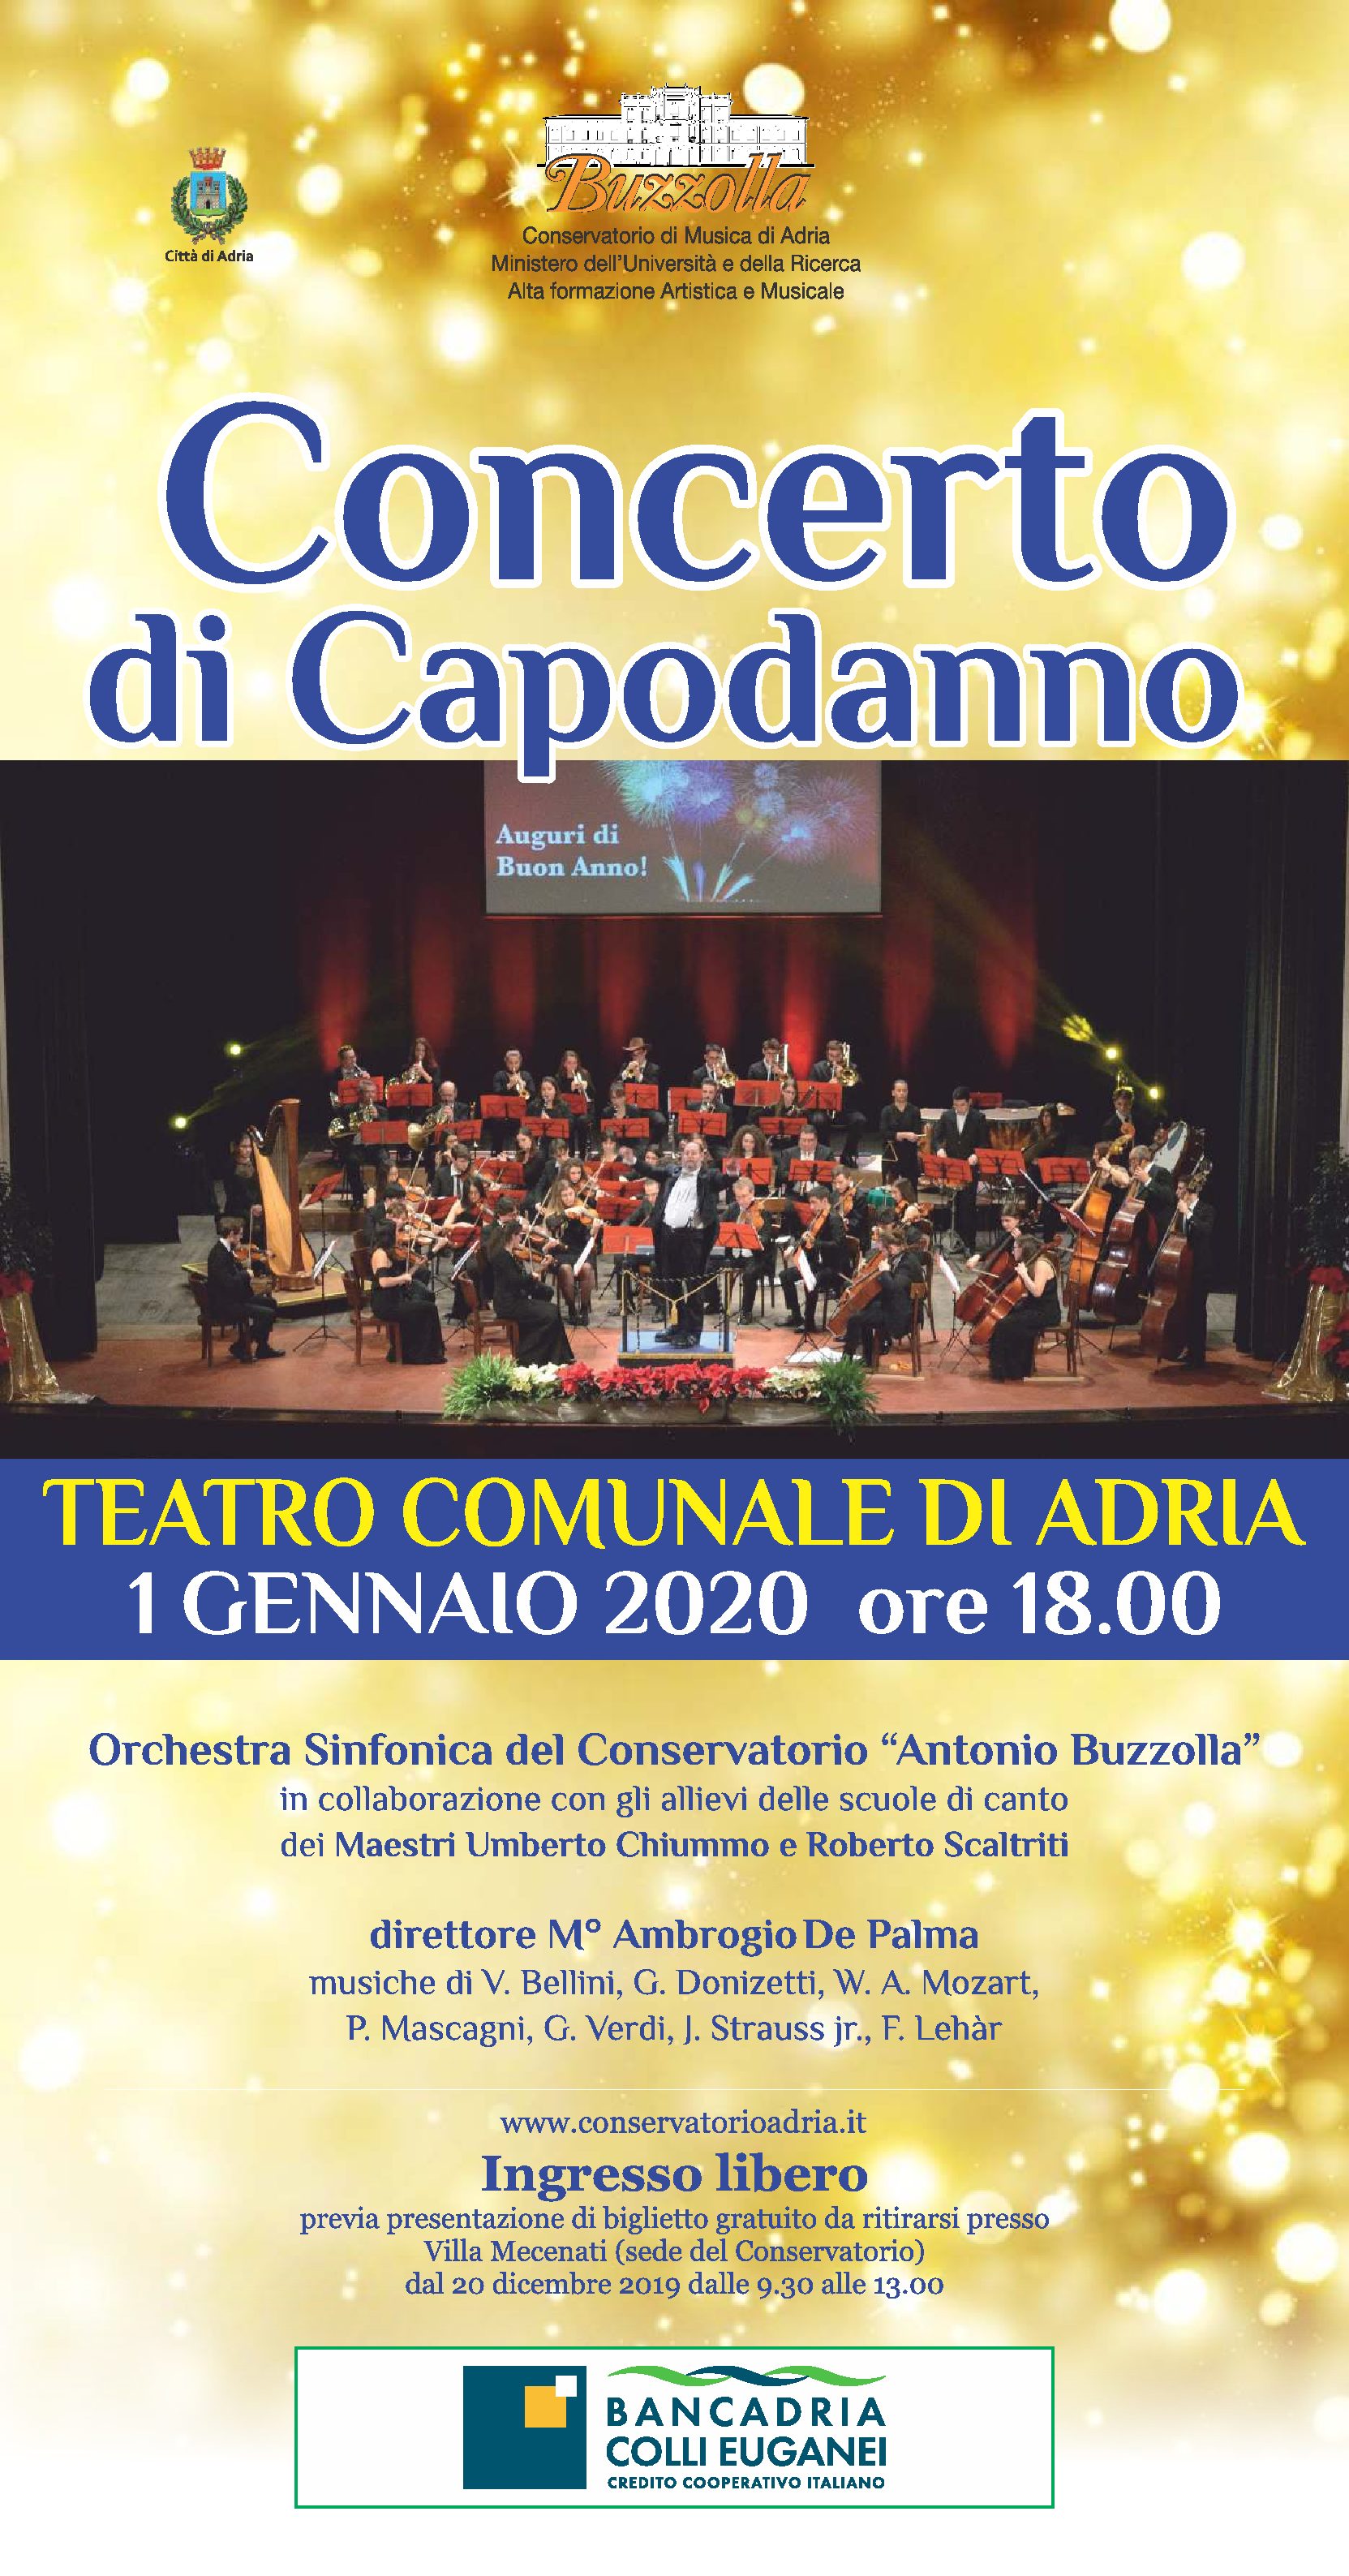 1 gennaio 2020 – Concerto di Capodanno, ore 18.00, Teatro Comunale di Adria